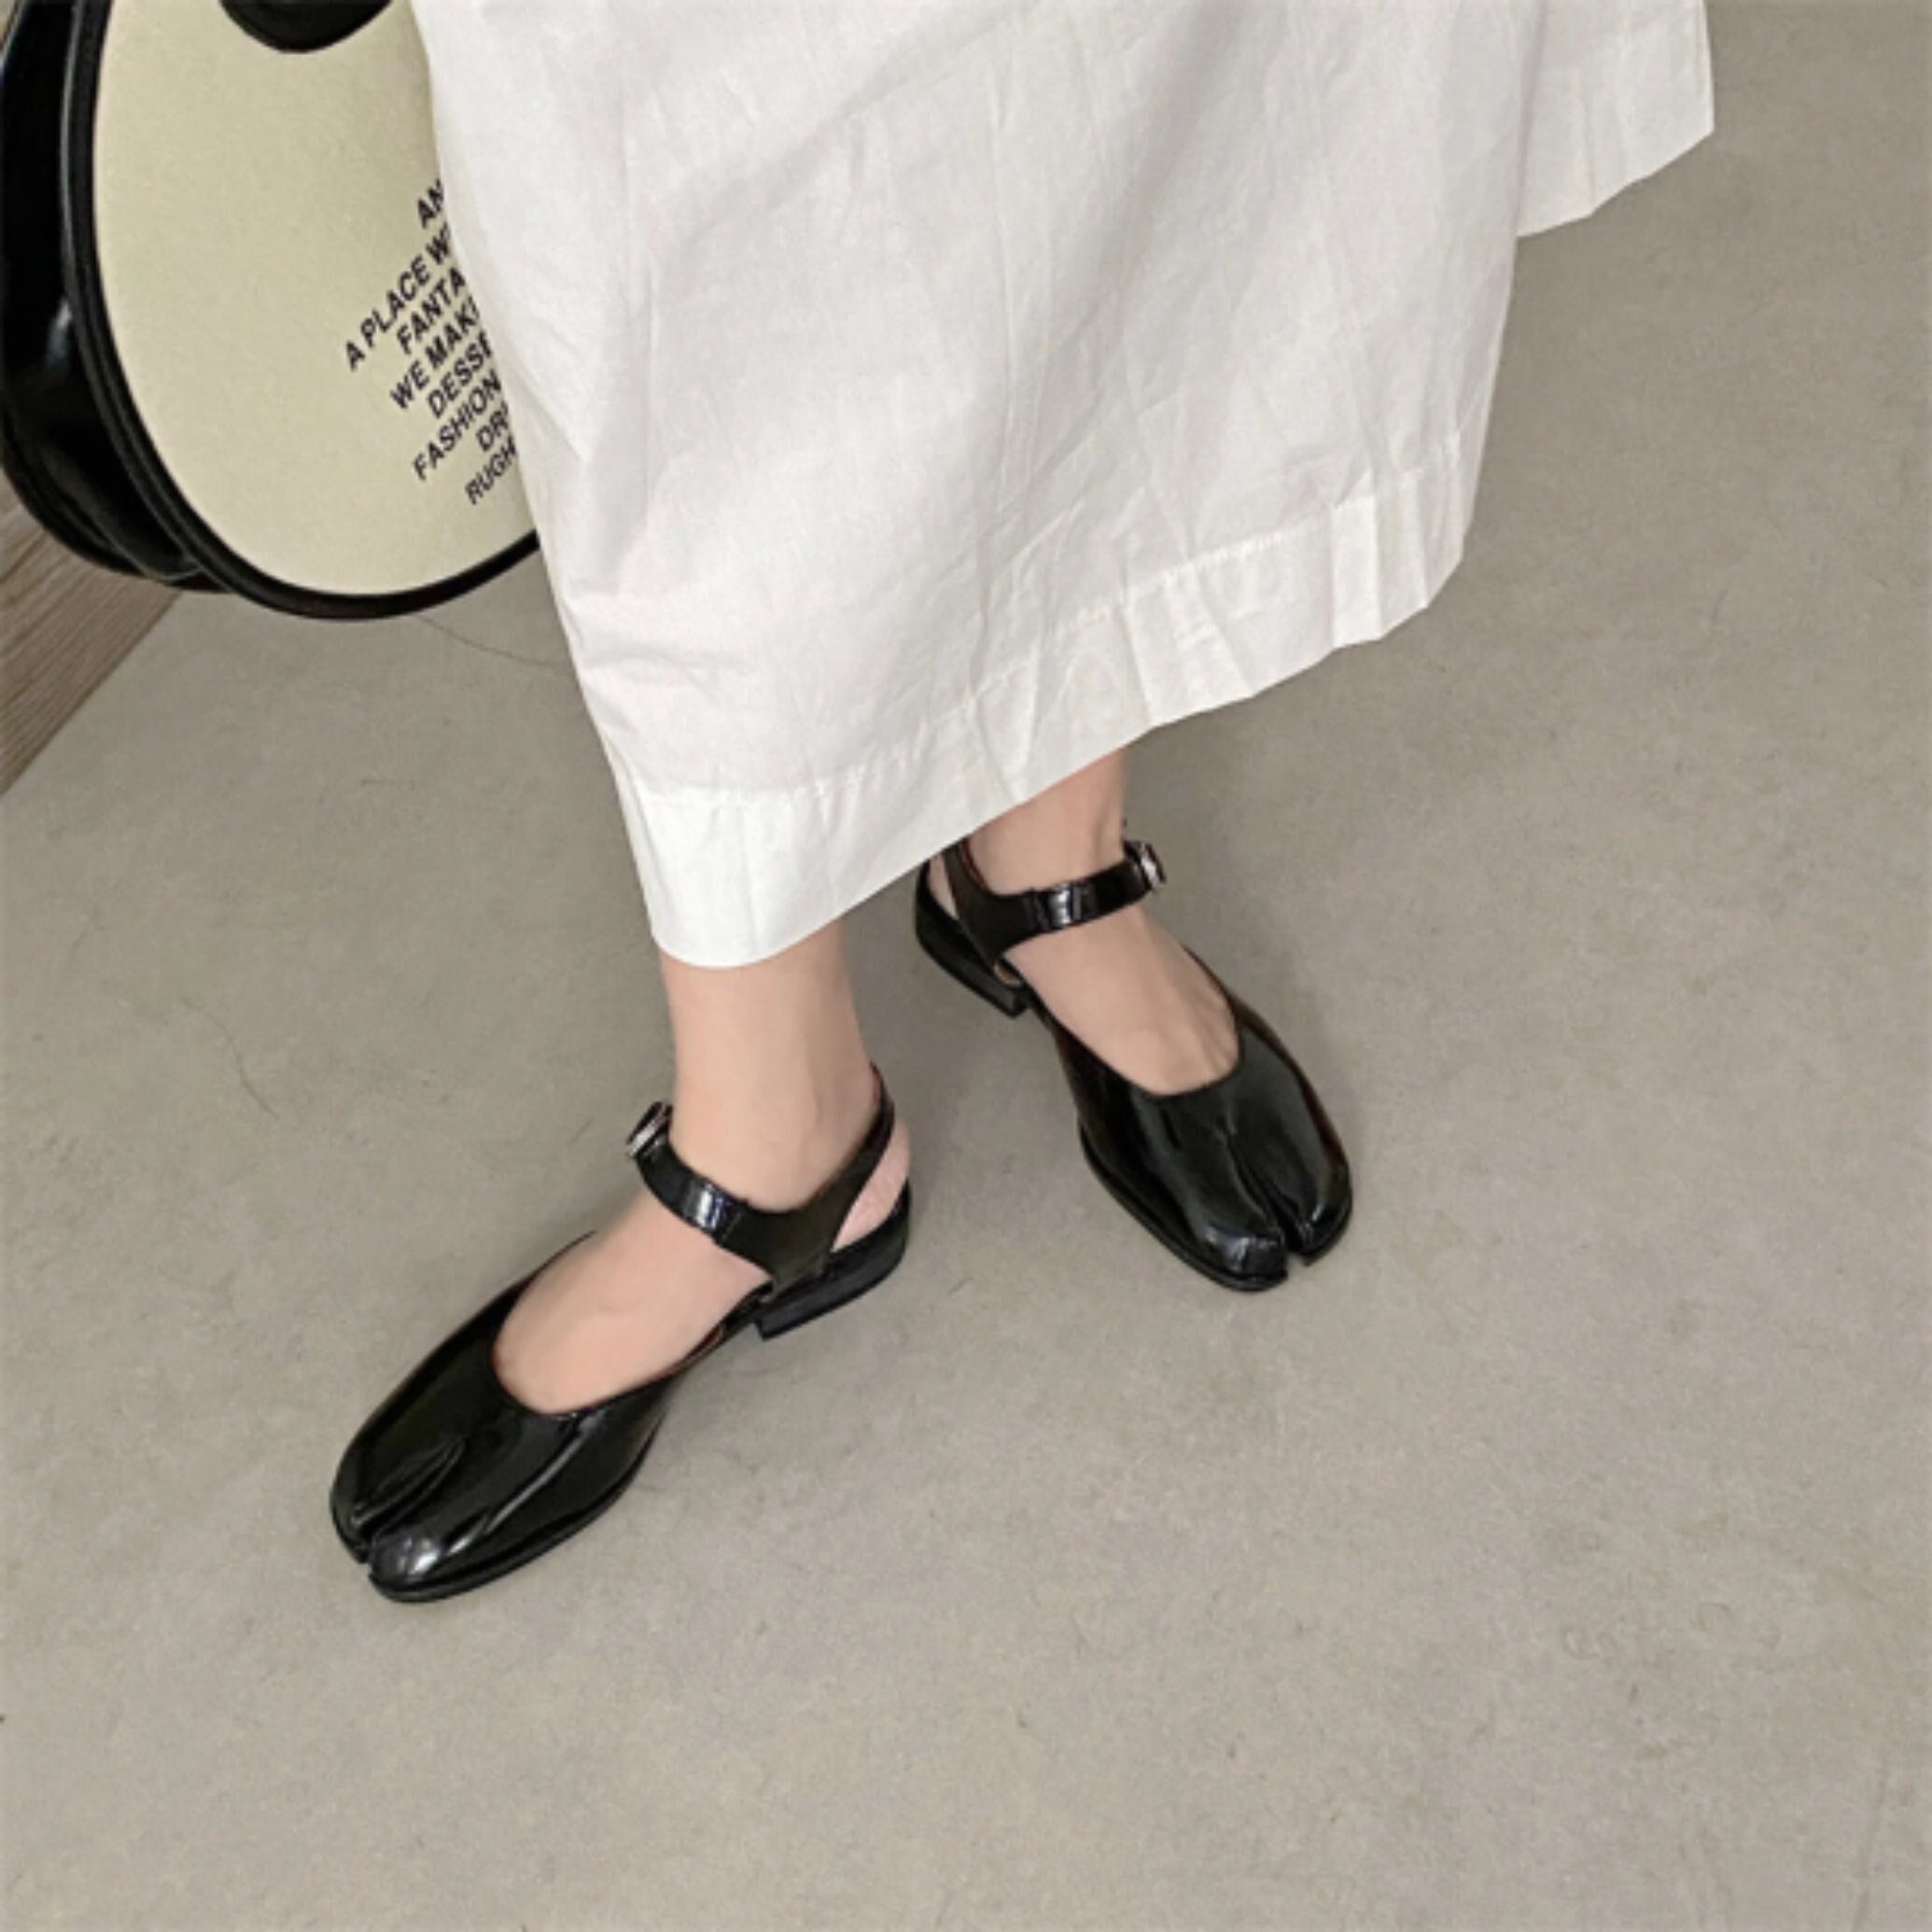 Black Tabi Split-Toe Sandals for Women - Stylish Flats for Summer